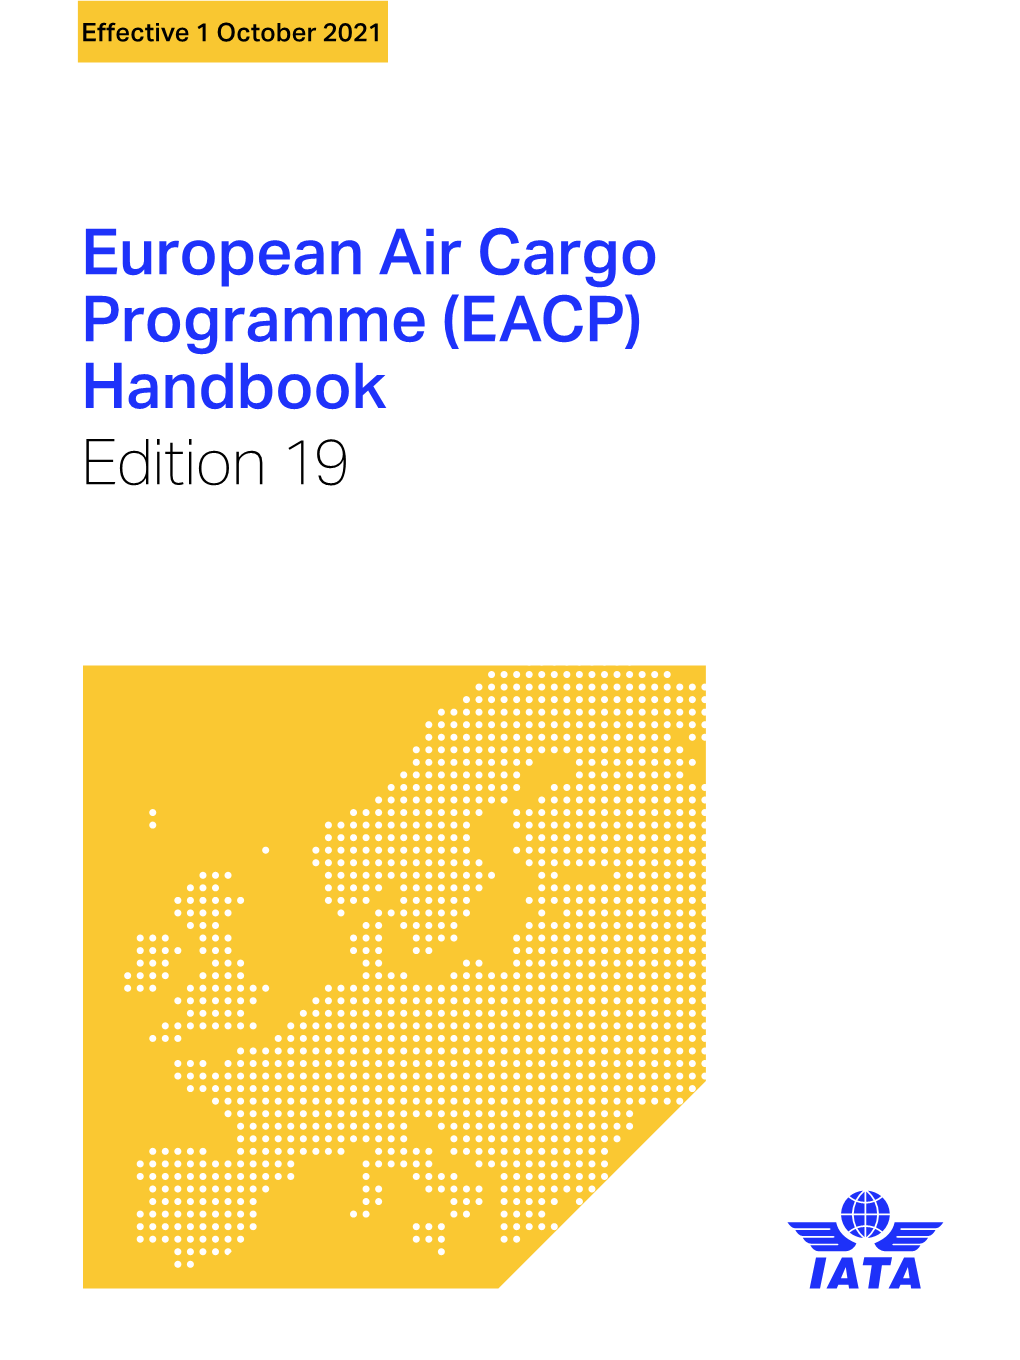 European Air Cargo Programme (EACP) Handbook Edition 19 NOTICE DISCLAIMER